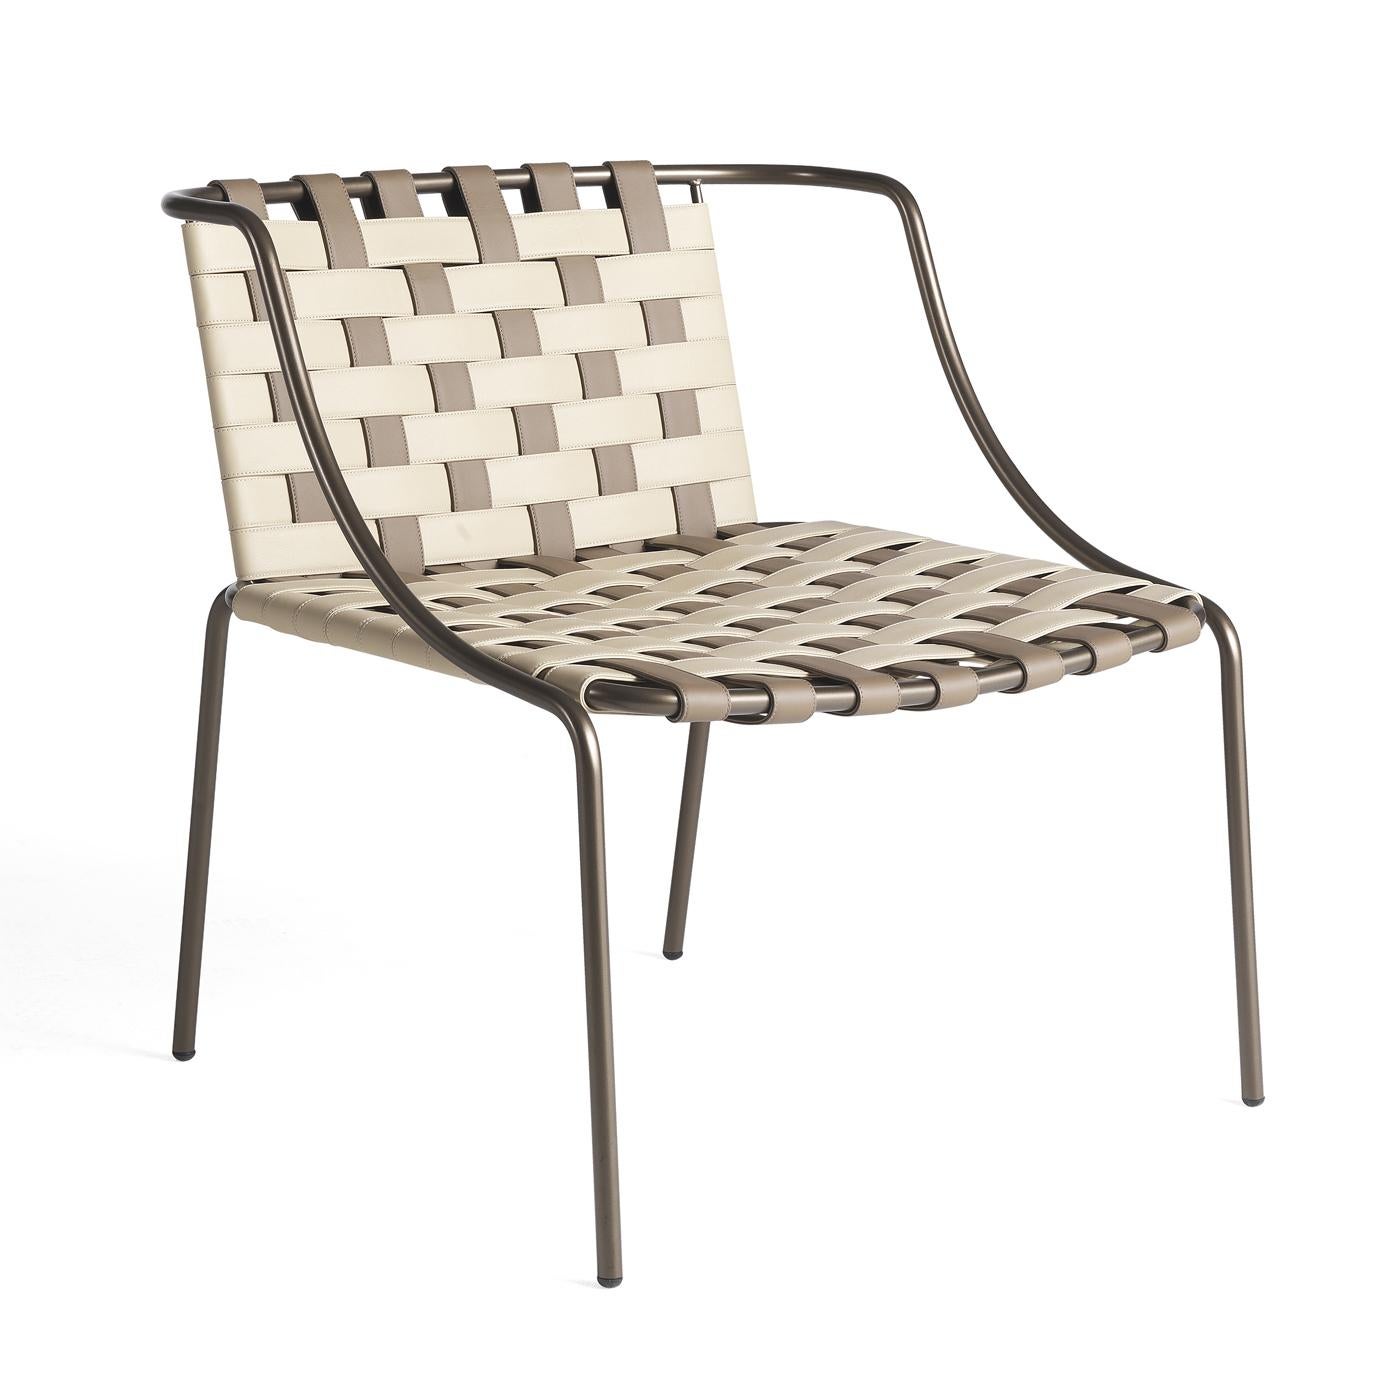 Alliant un design classique à une sophistication moderne, ce petit fauteuil présente un étonnant entrelacement de cuir blanc et beige sur l'assise et le dossier reposant sur une structure sinueuse et fine en métal tubulaire. Cette pièce sera un